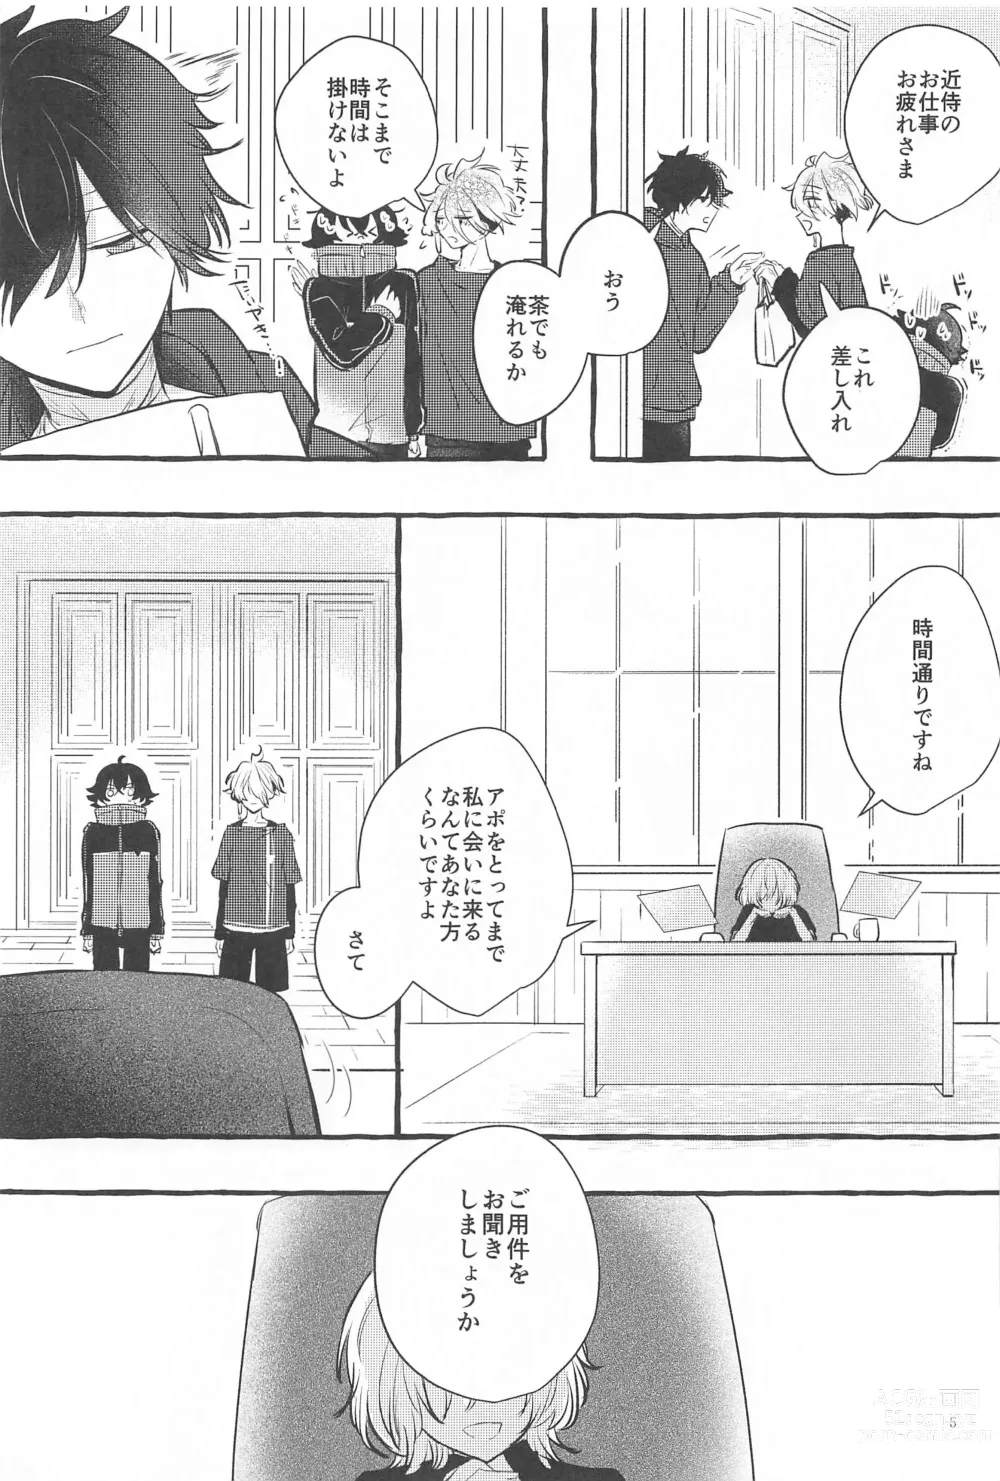 Page 4 of doujinshi Kanete kara no Setsubou de